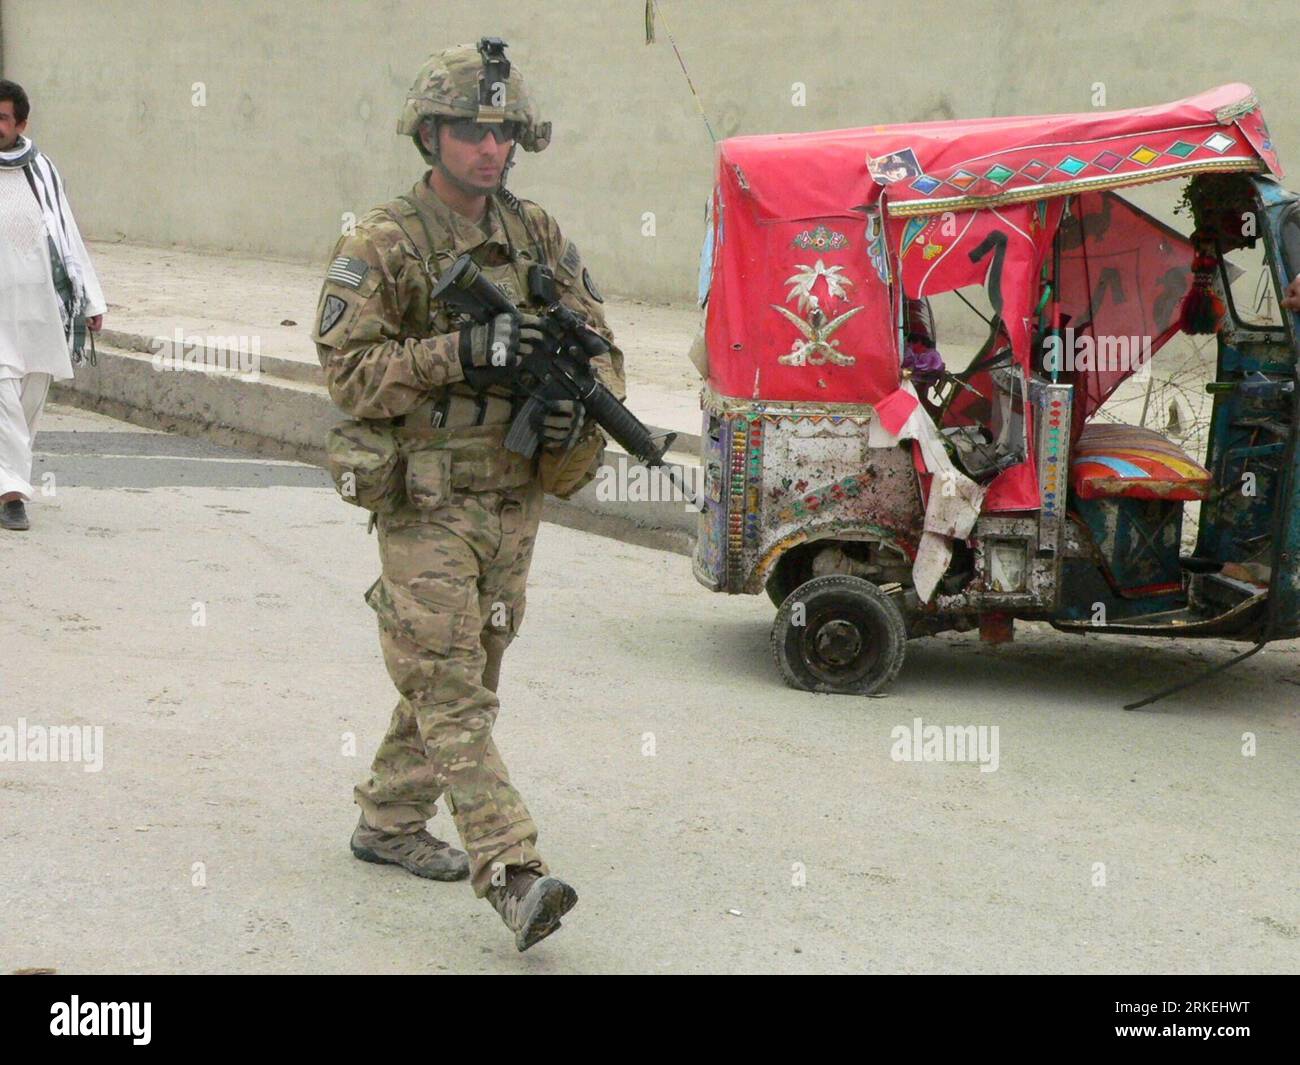 Bildnummer: 55261073 Datum: 14.04.2011 Copyright: imago/Xinhua (110414) -- KANDAHAR, 14. April 2011 (Xinhua) -- Ein NATO-Soldatenwächter an dem Ort, an dem ein Selbstmordanschlag in Kandahar, Afghanistan, am 14. April 2011 stattfand. Die afghanische Polizei schoss am Donnerstagmorgen einen Selbstmordattentäter und löste eine Explosion aus, bei der ein Zivilist in der Provinz Kandahar verletzt wurde, so eine Erklärung des Innenministeriums. (Xinhua/Zalamy) (yc) AFGHANISTAN-KANDAHAR-BLAST PUBLICATIONxNOTxINxCHN Gesellschaft Explosion Bombenanschlag kbdig xkg 2011 quer o0 Anschlag Selbstmordanschlag Bildnummer 55261073 Datum 14 04 2011 Cop Stockfoto